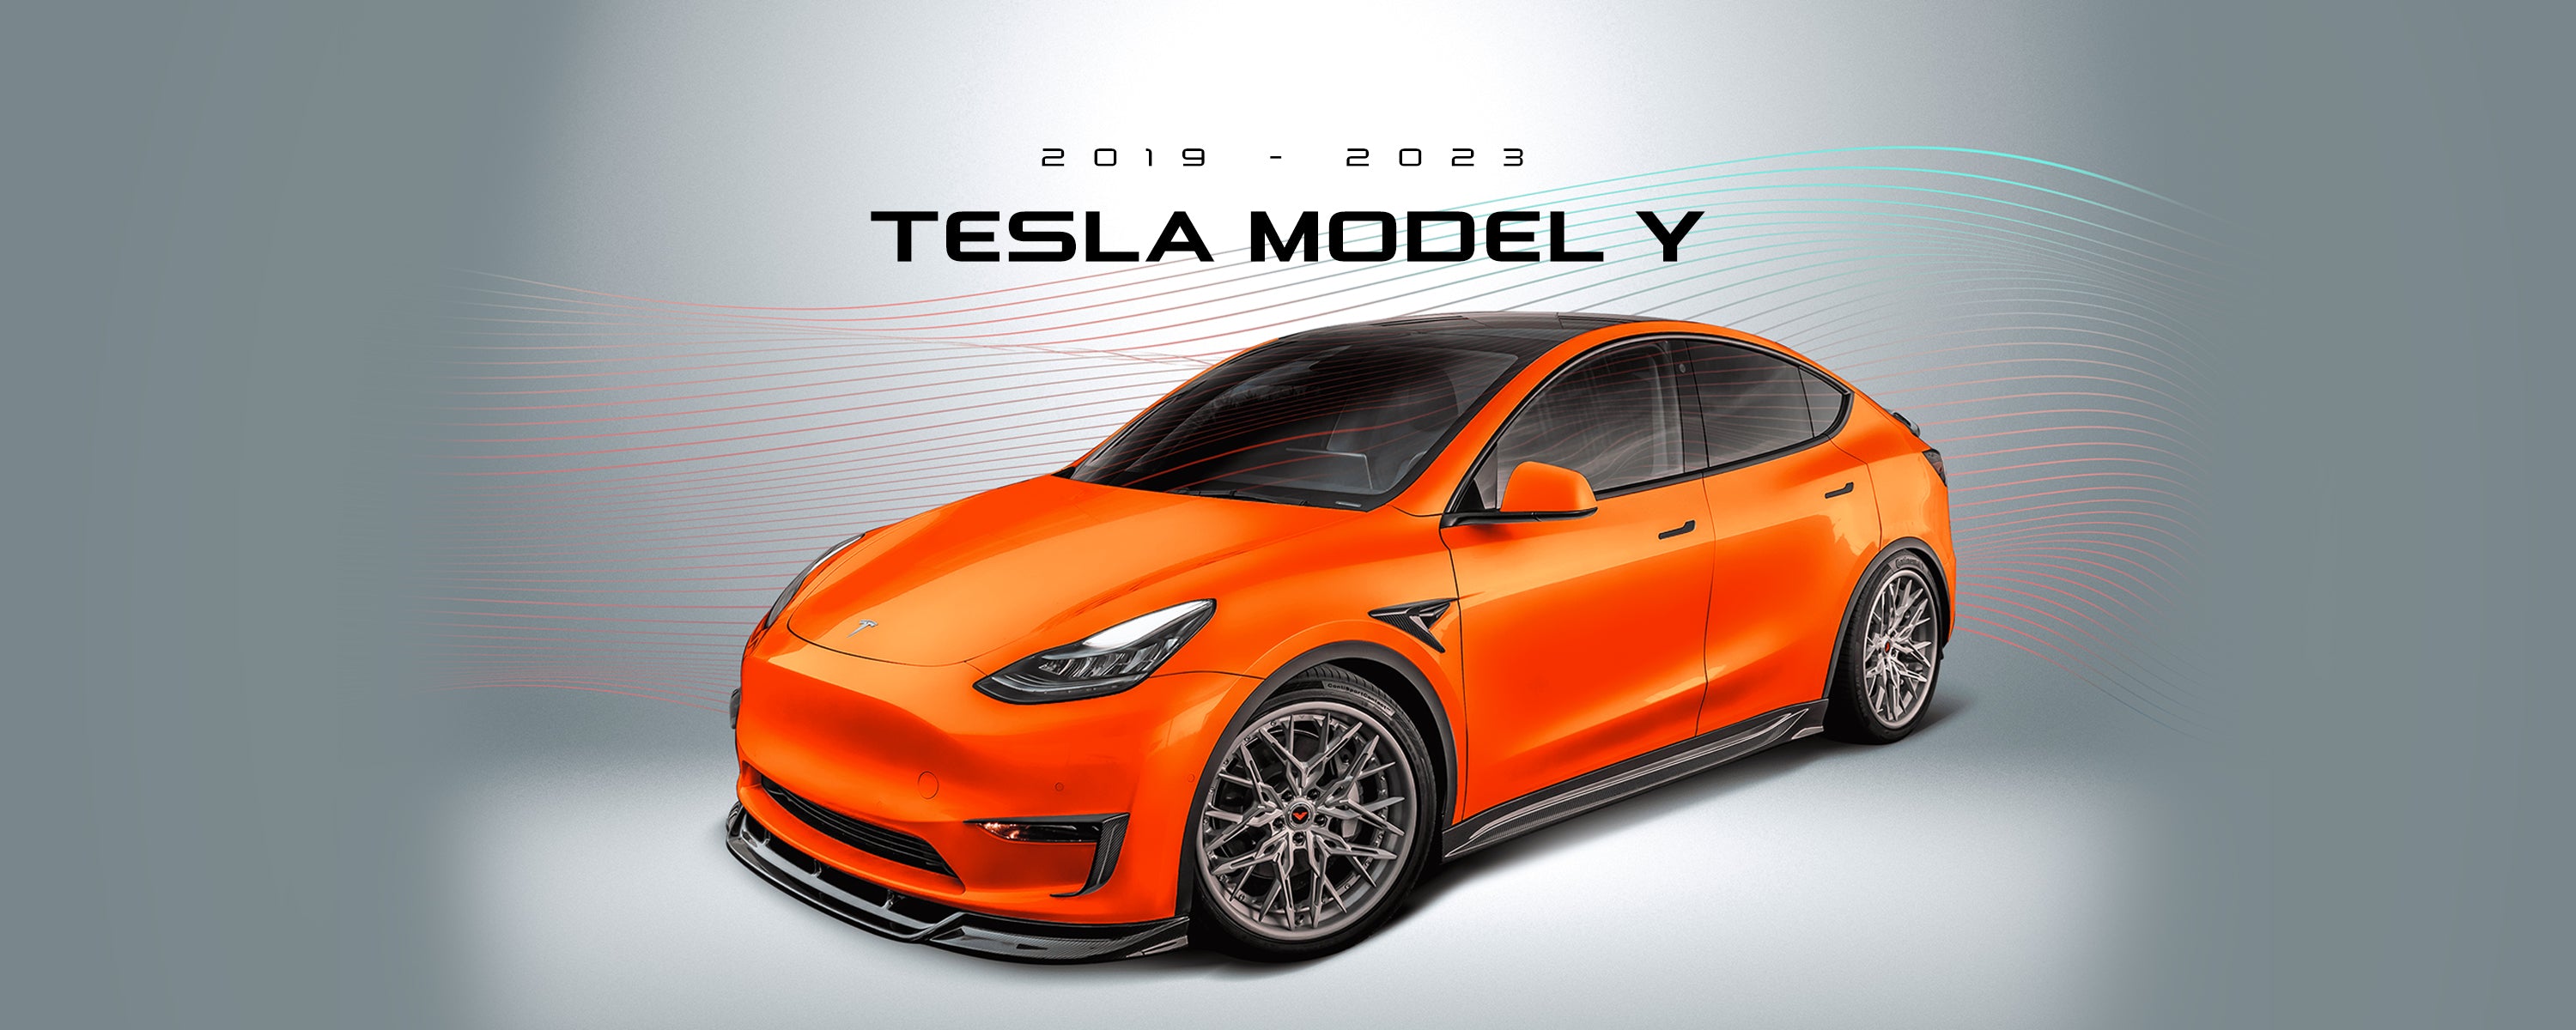 Tesla Model Y Aero